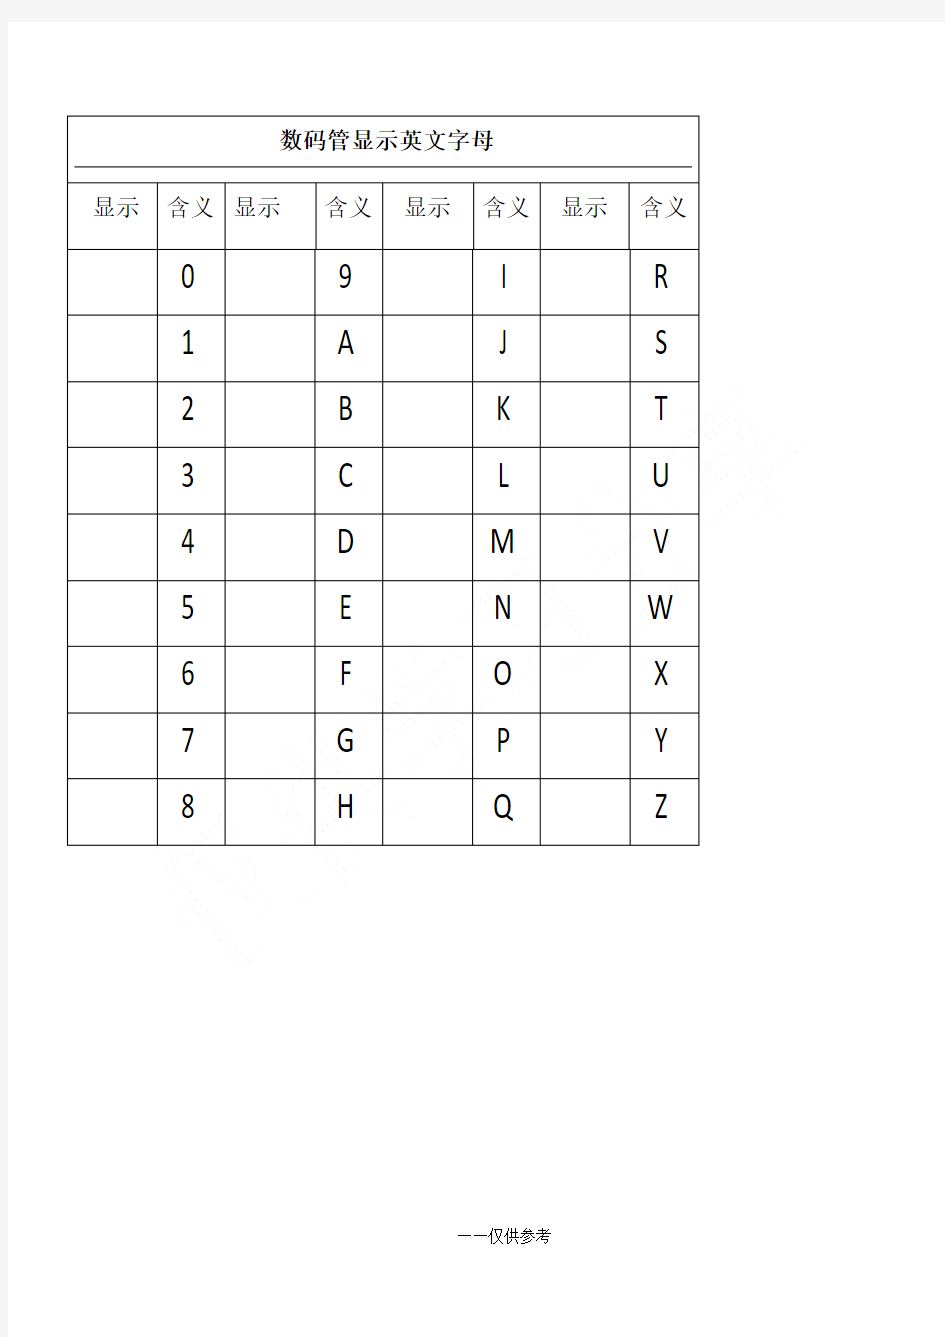 7段数码管显示英文字母和数字